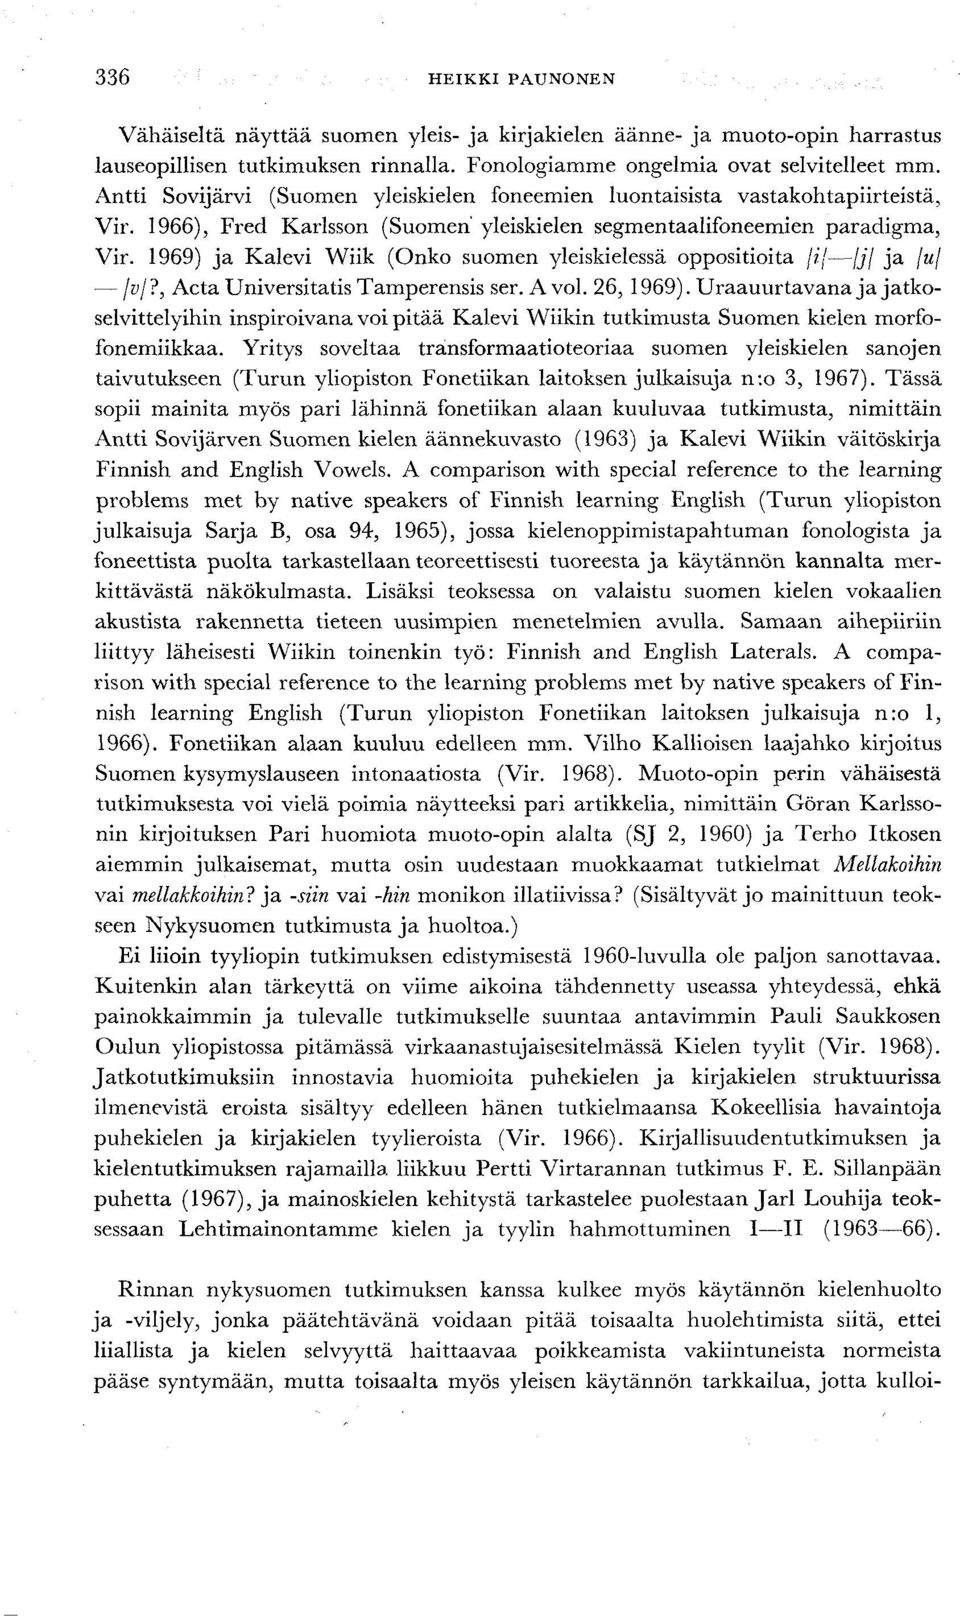 1969) ja Kalevi Wiik (Onko suomen yleiskielessä oppositioita /;'/ jjj ja \u\ fvj?, Acta Universitatis Tamperensis ser. A voi. 26, 1969).